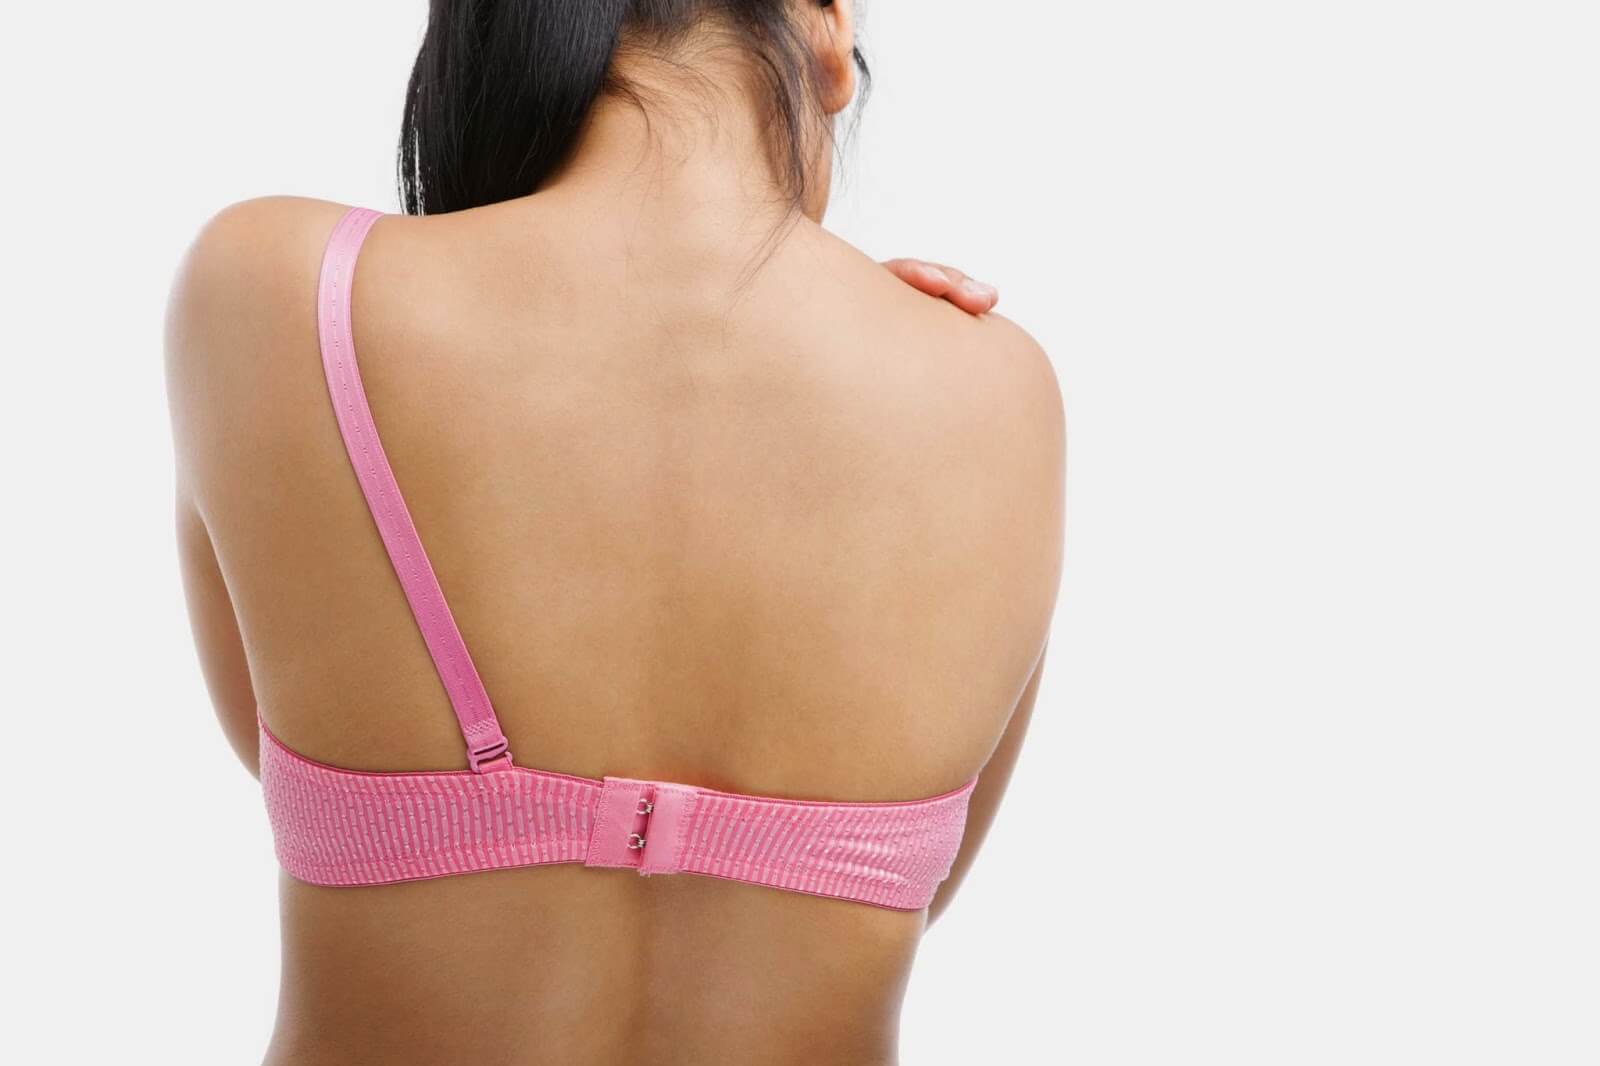 Reducción mamaria por dolores de espalda Dr. Leopoldo Cagigal - Cirugía plástica y estética